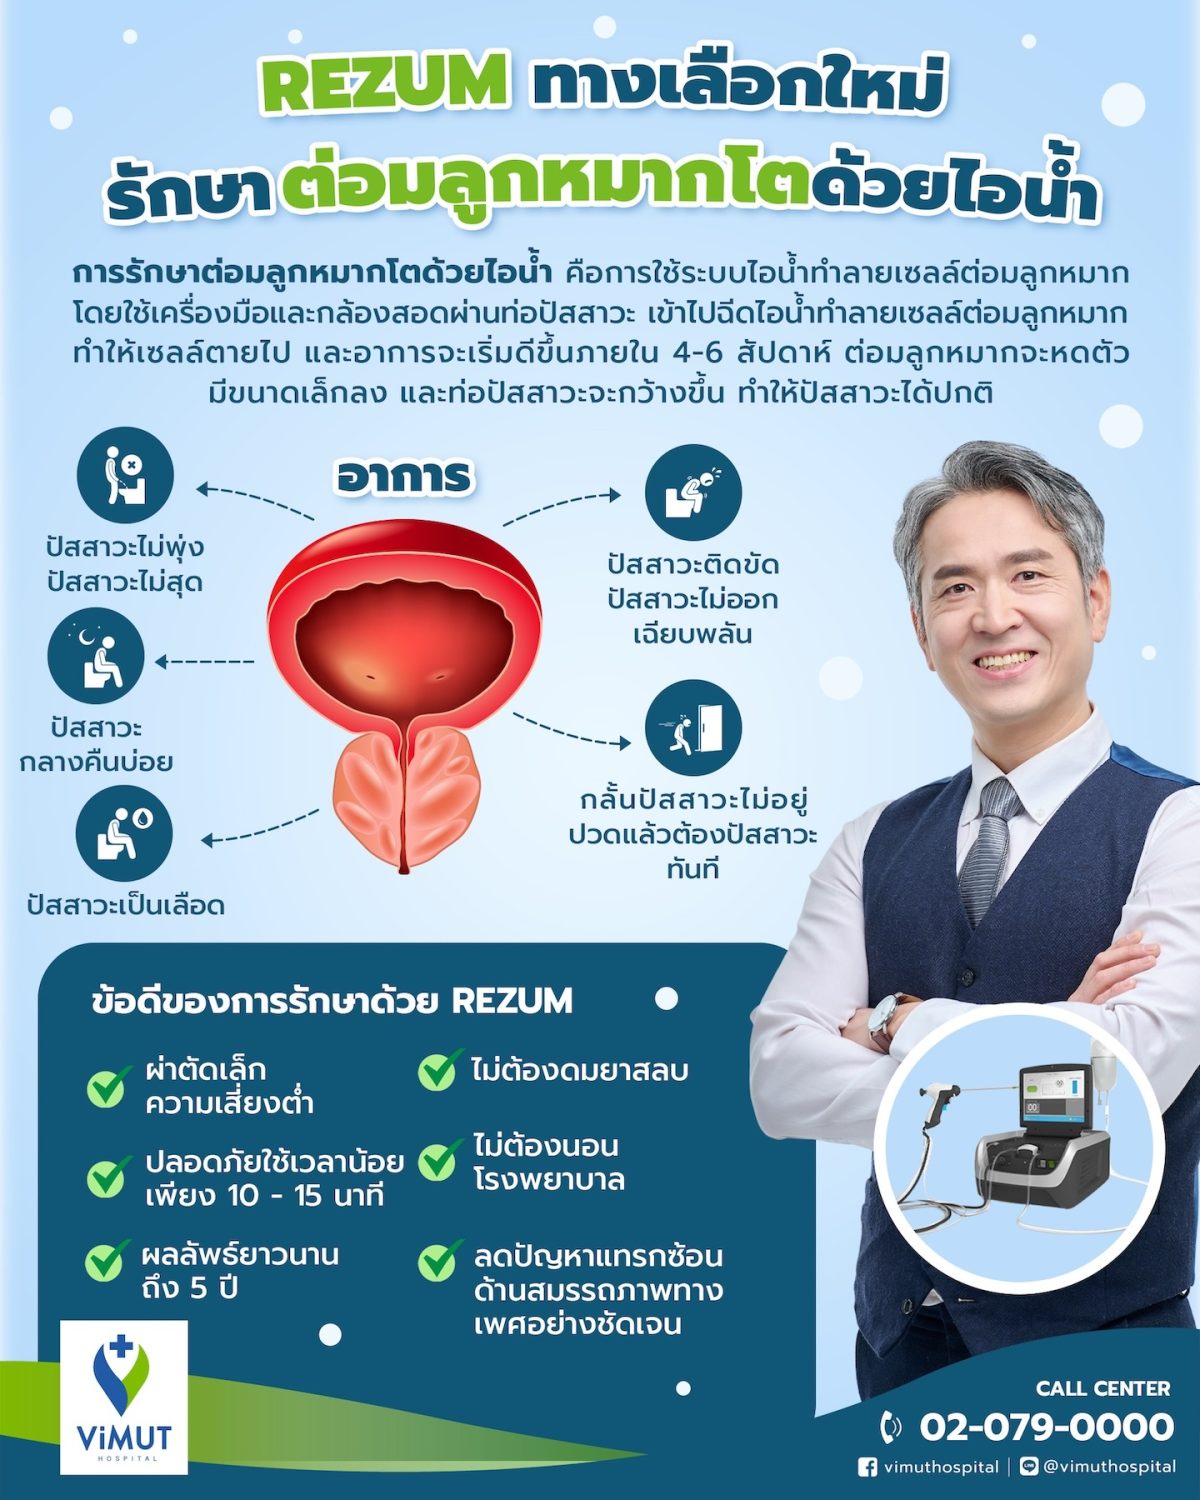 ชายไทยเฮ! รพ.วิมุต เปิดตัวเทคโนโลยีใหม่ 'รักษาต่อมลูกหมากโตด้วยไอน้ำ' ปลอดภัย-หายไว-ไม่ต้องนอนโรงพยาบาล ชี้ชายไทยวัยเก๋า 80% เป็น